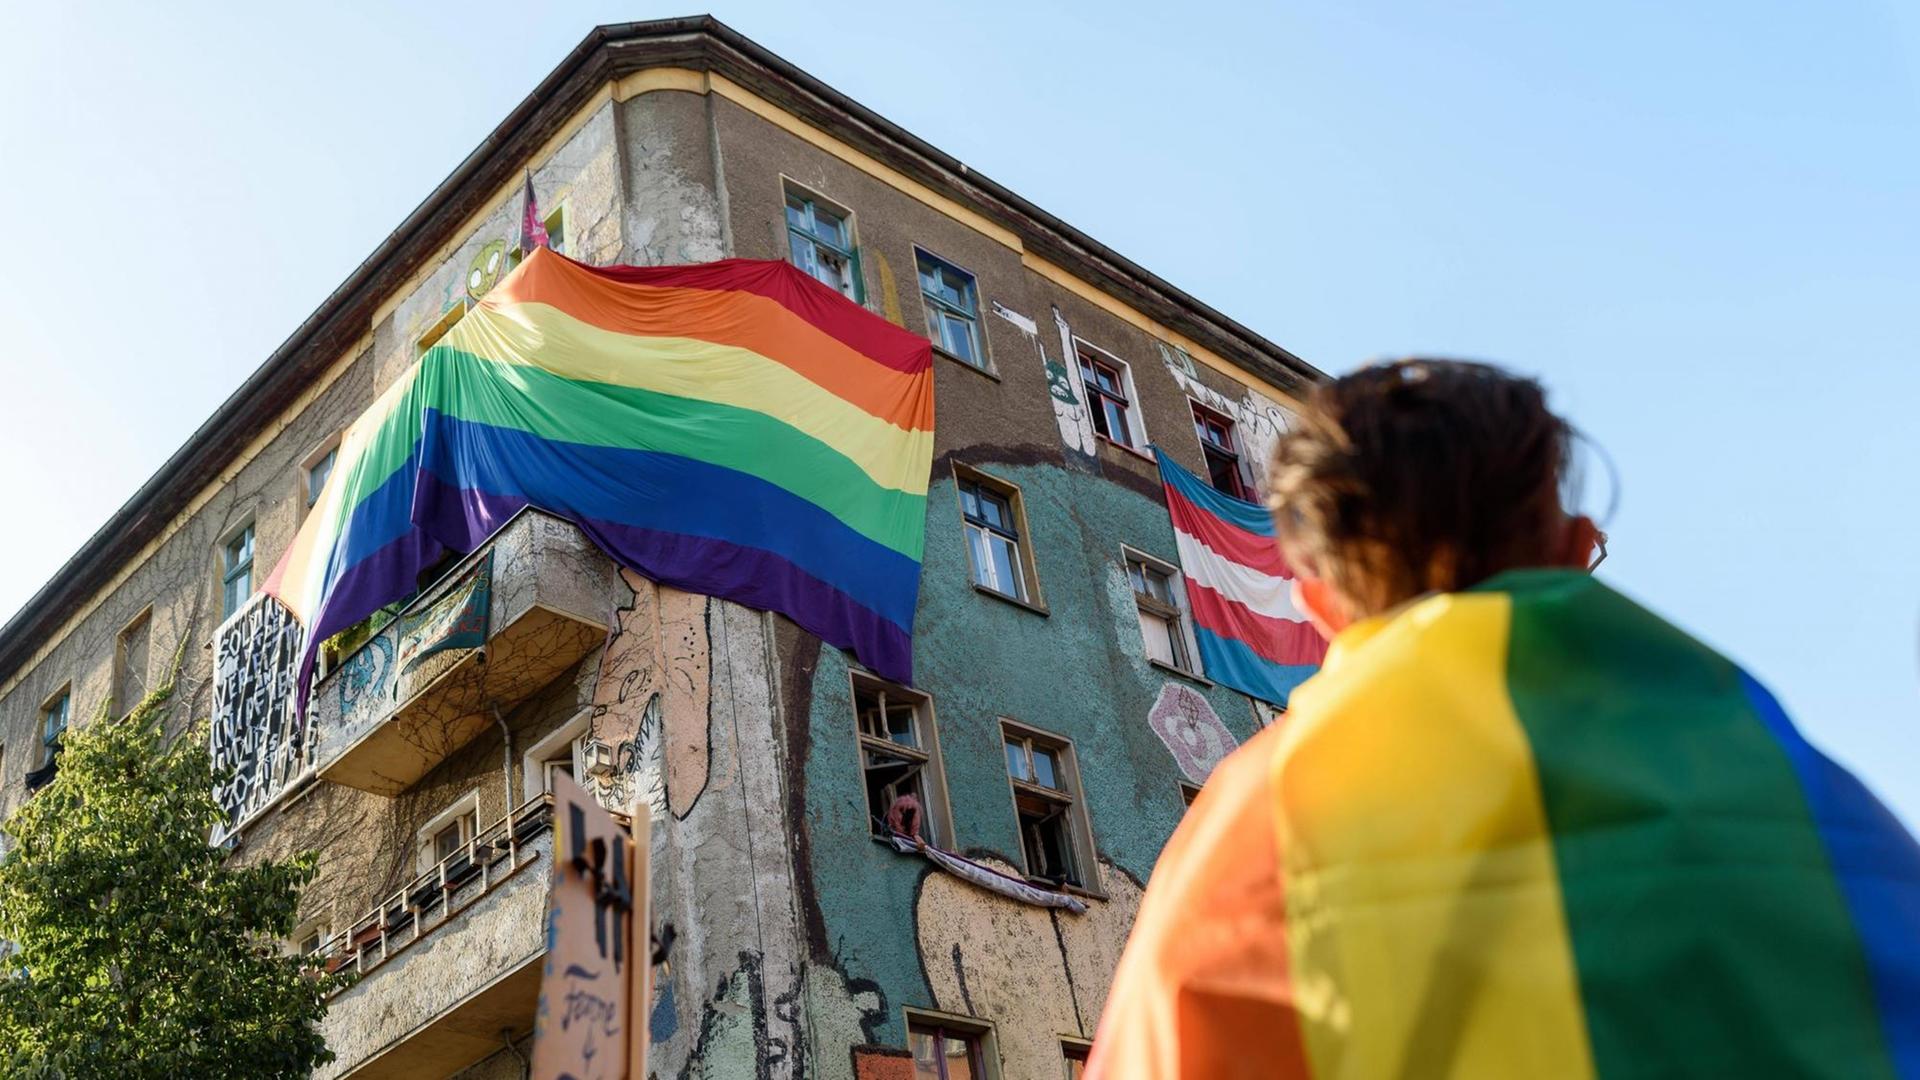 Das Haus Liebig 34 im Berliner Stadtteil Friedrichshain, geschmückt mit einer Regenbogen Flagge.